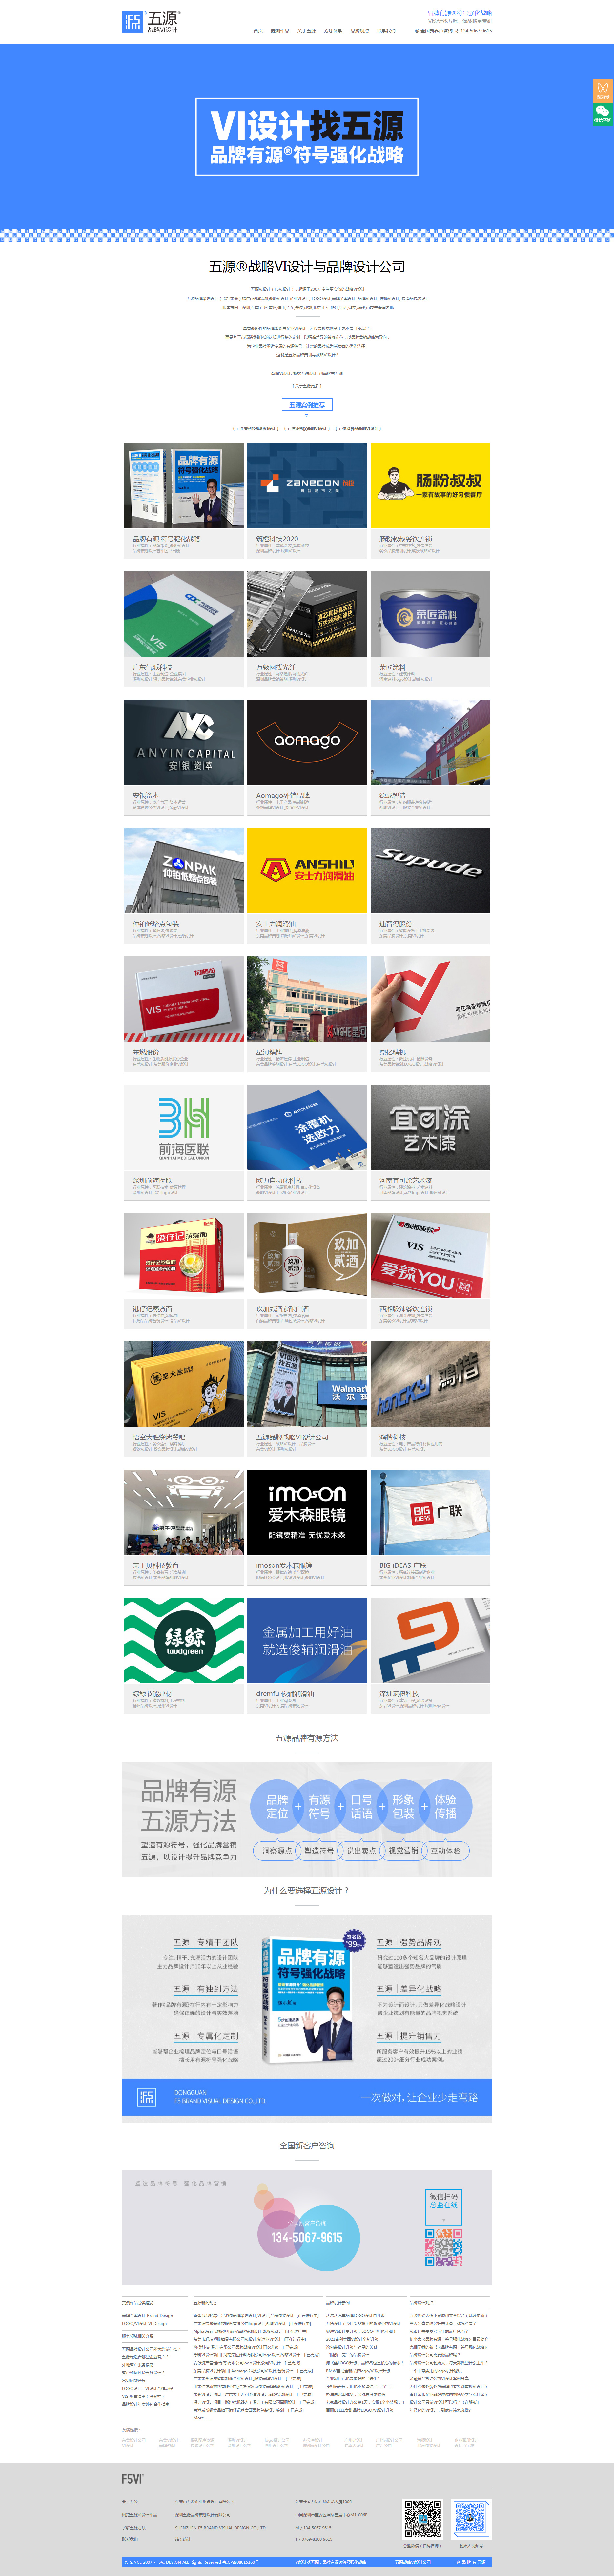 东莞五源企业形象设计网站制作首页设计效果图